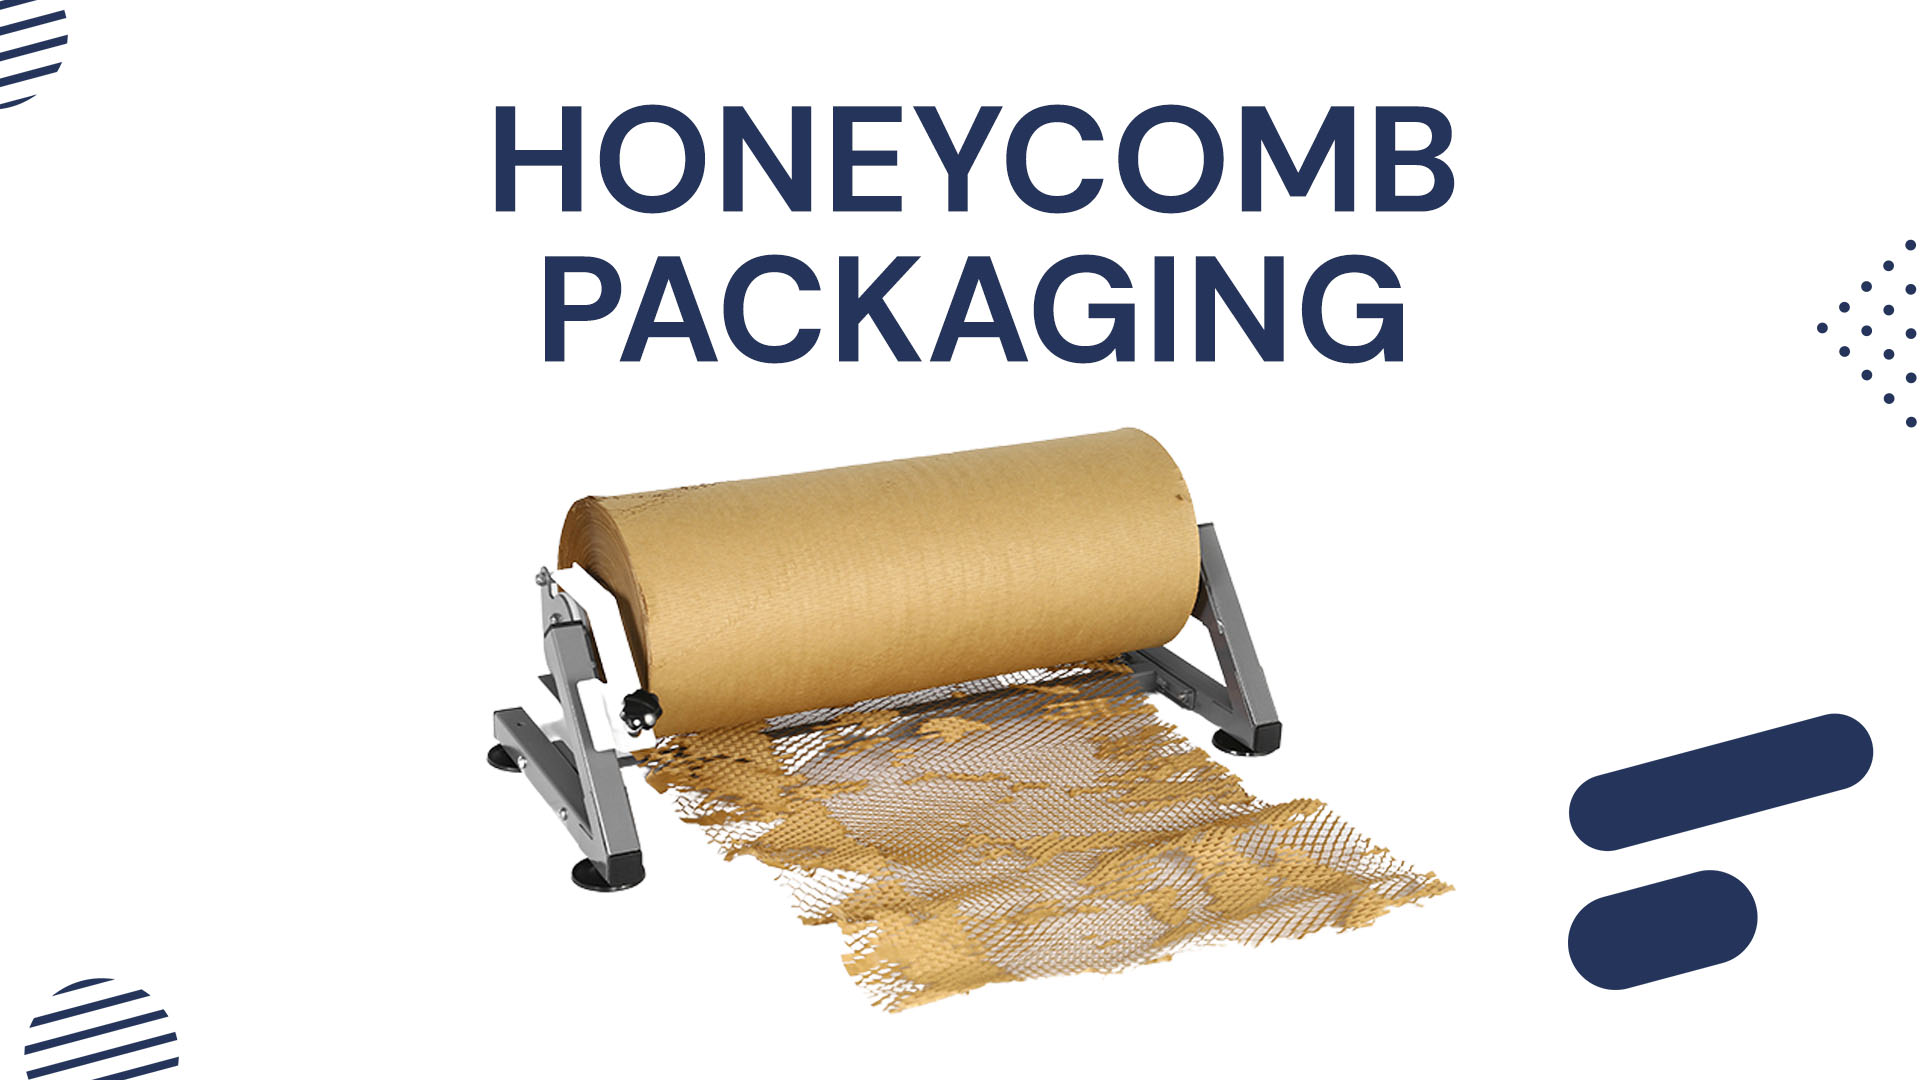  Honeycomb packaging beneficios y consejos - Boxor